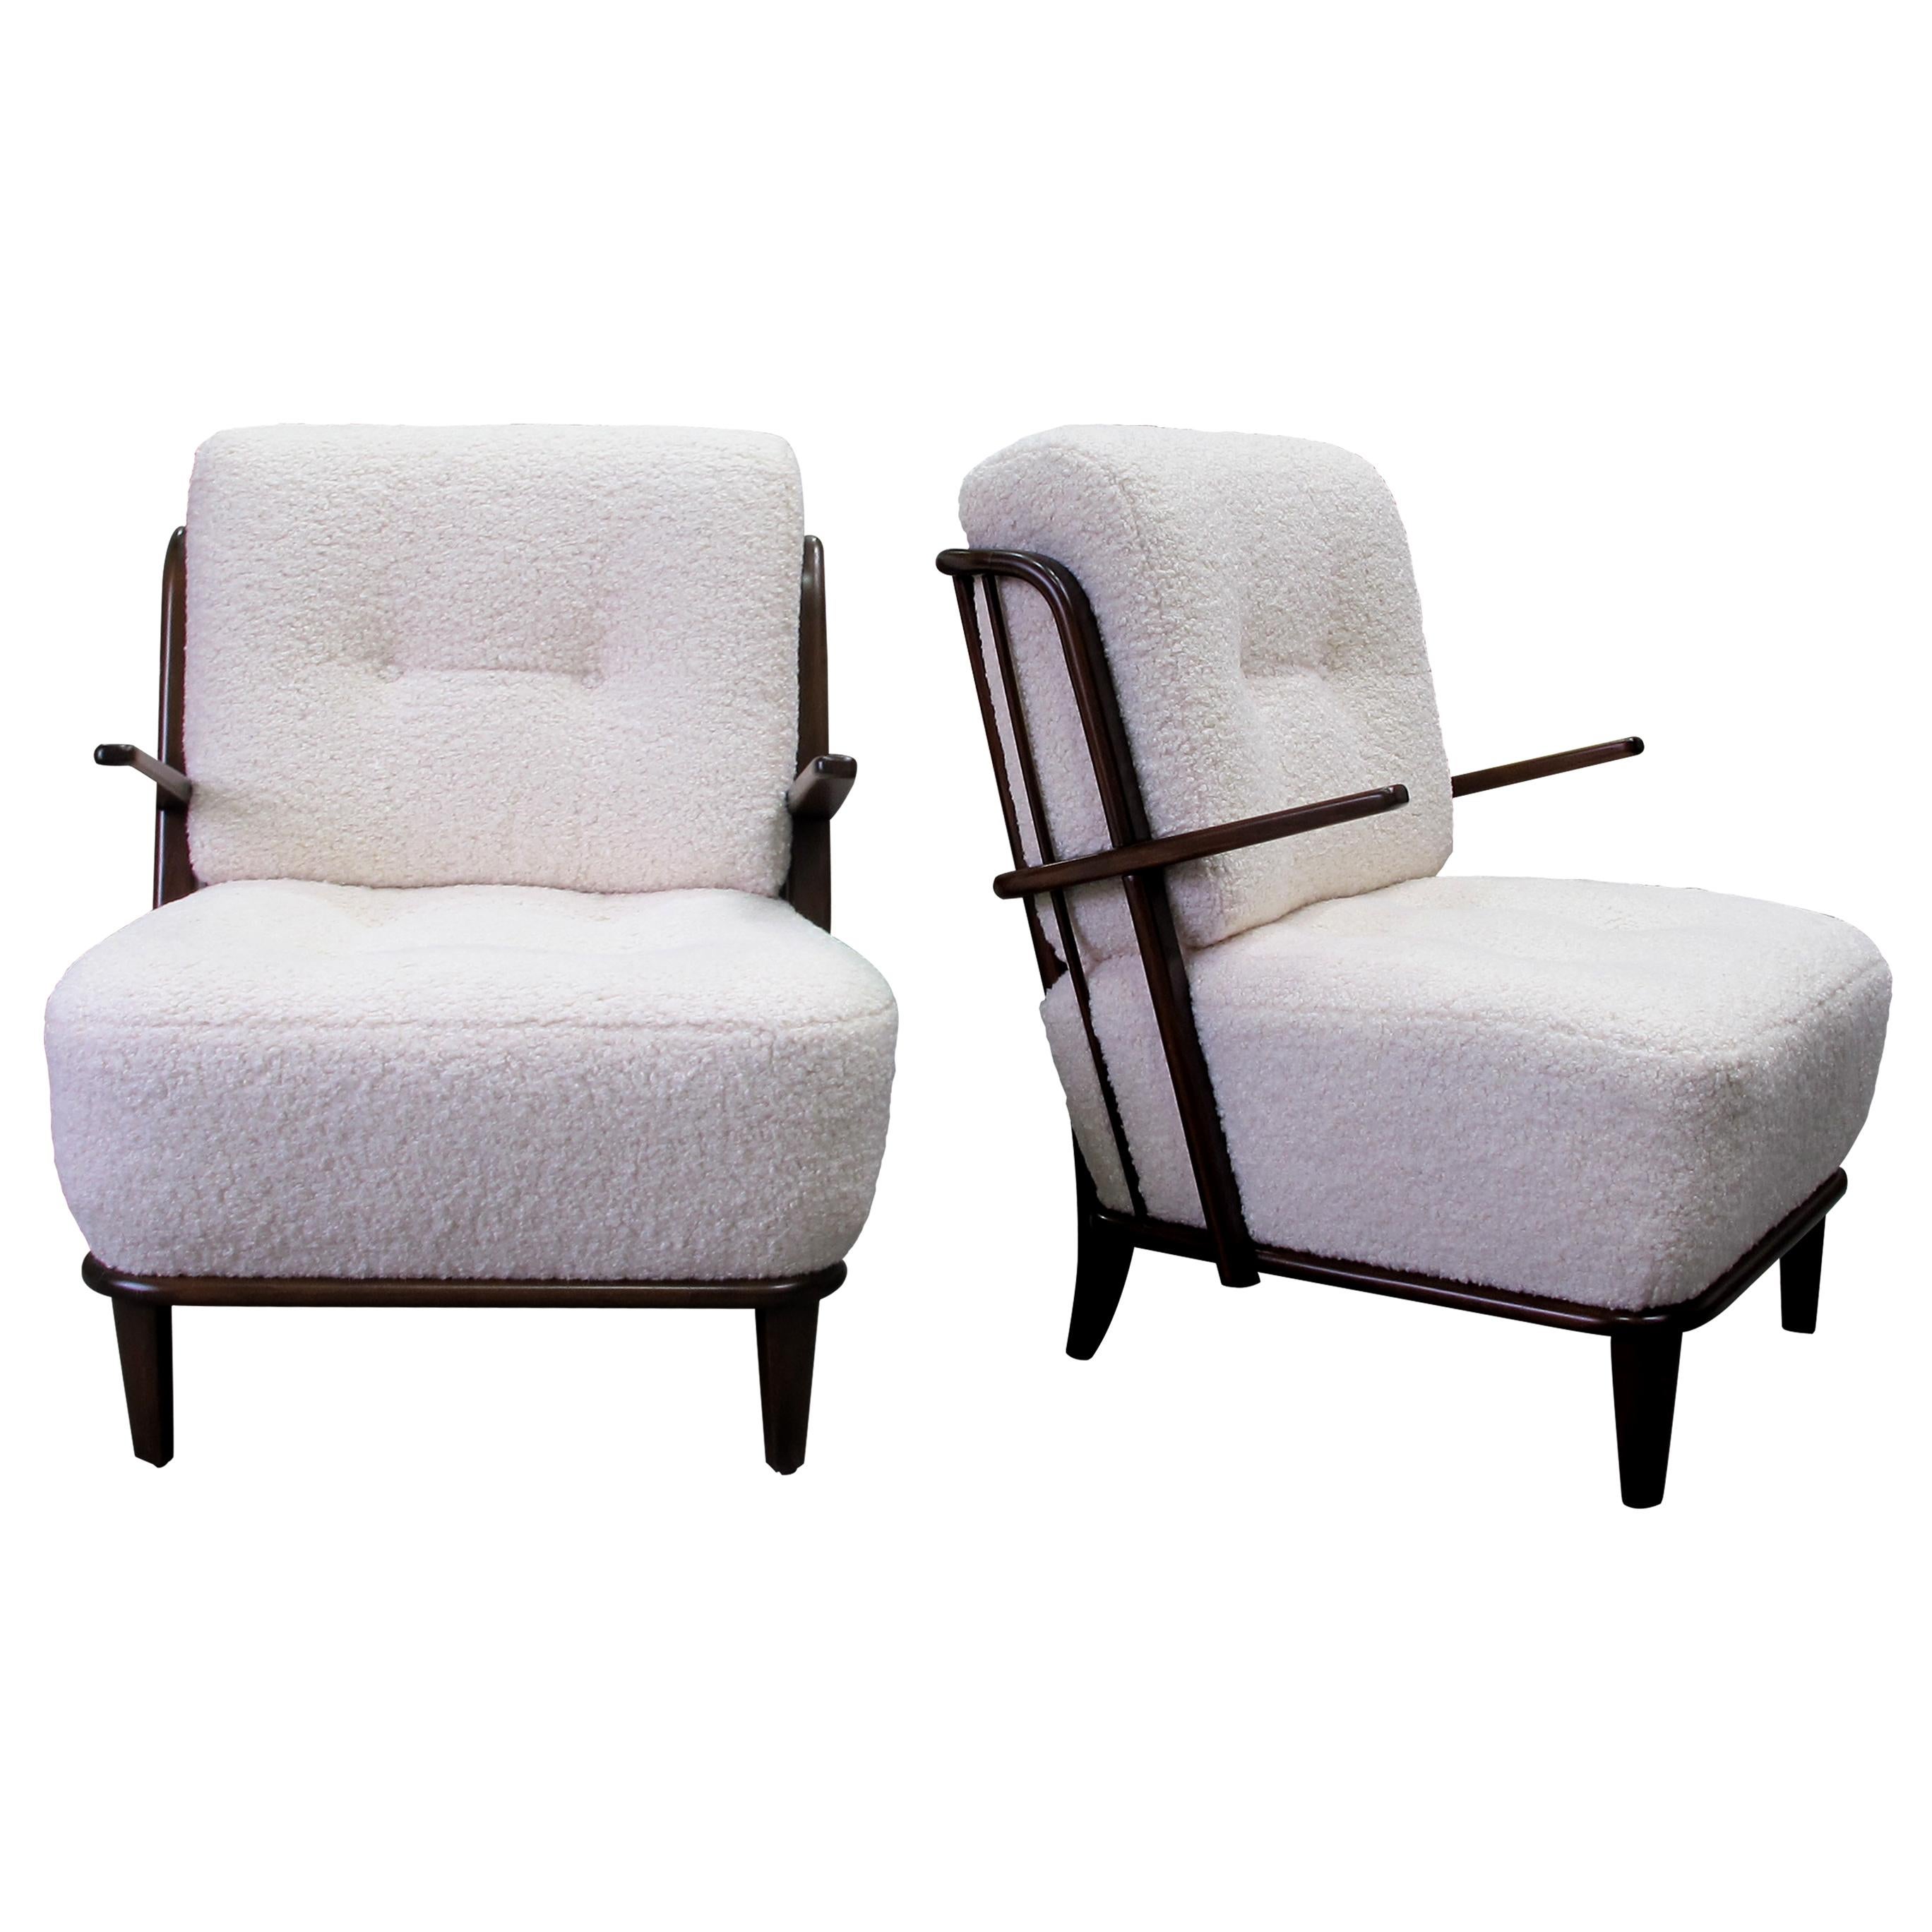 Dies ist ein sehr elegantes Paar Sessel mit Eichengestell, hergestellt in Deutschland in den 1940er Jahren, neu gepolstert mit einem weichen Bouclestoff.  Das charakteristische Merkmal dieser Sessel ist die sorgfältig gestaltete Rückenlehne mit